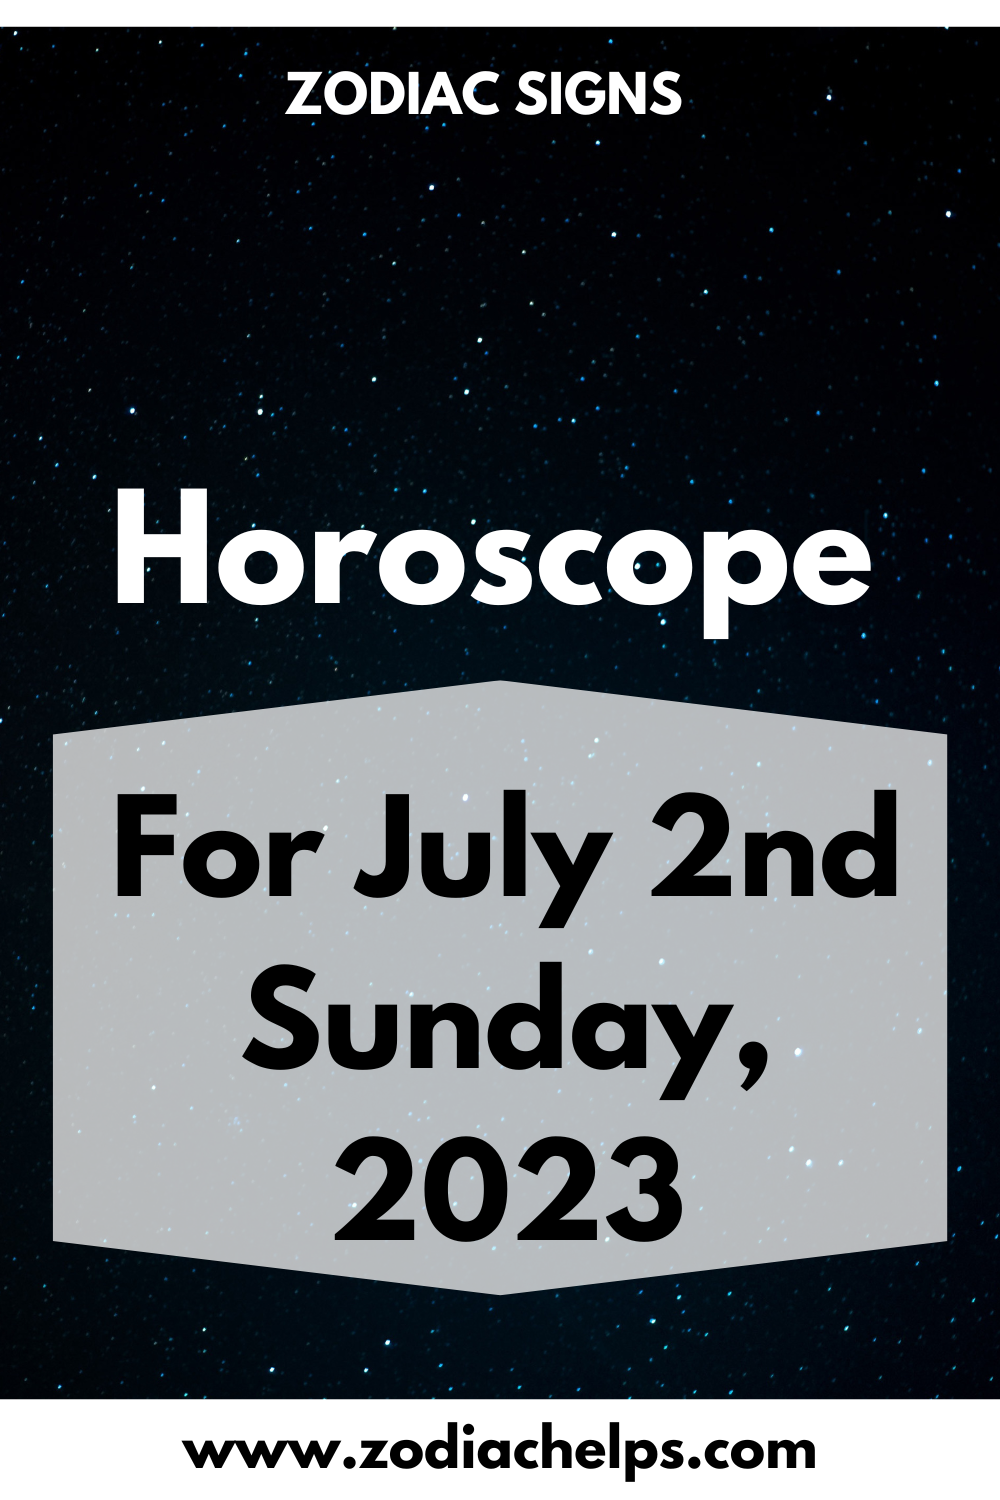 Horoscope for July 2nd Sunday, 2023